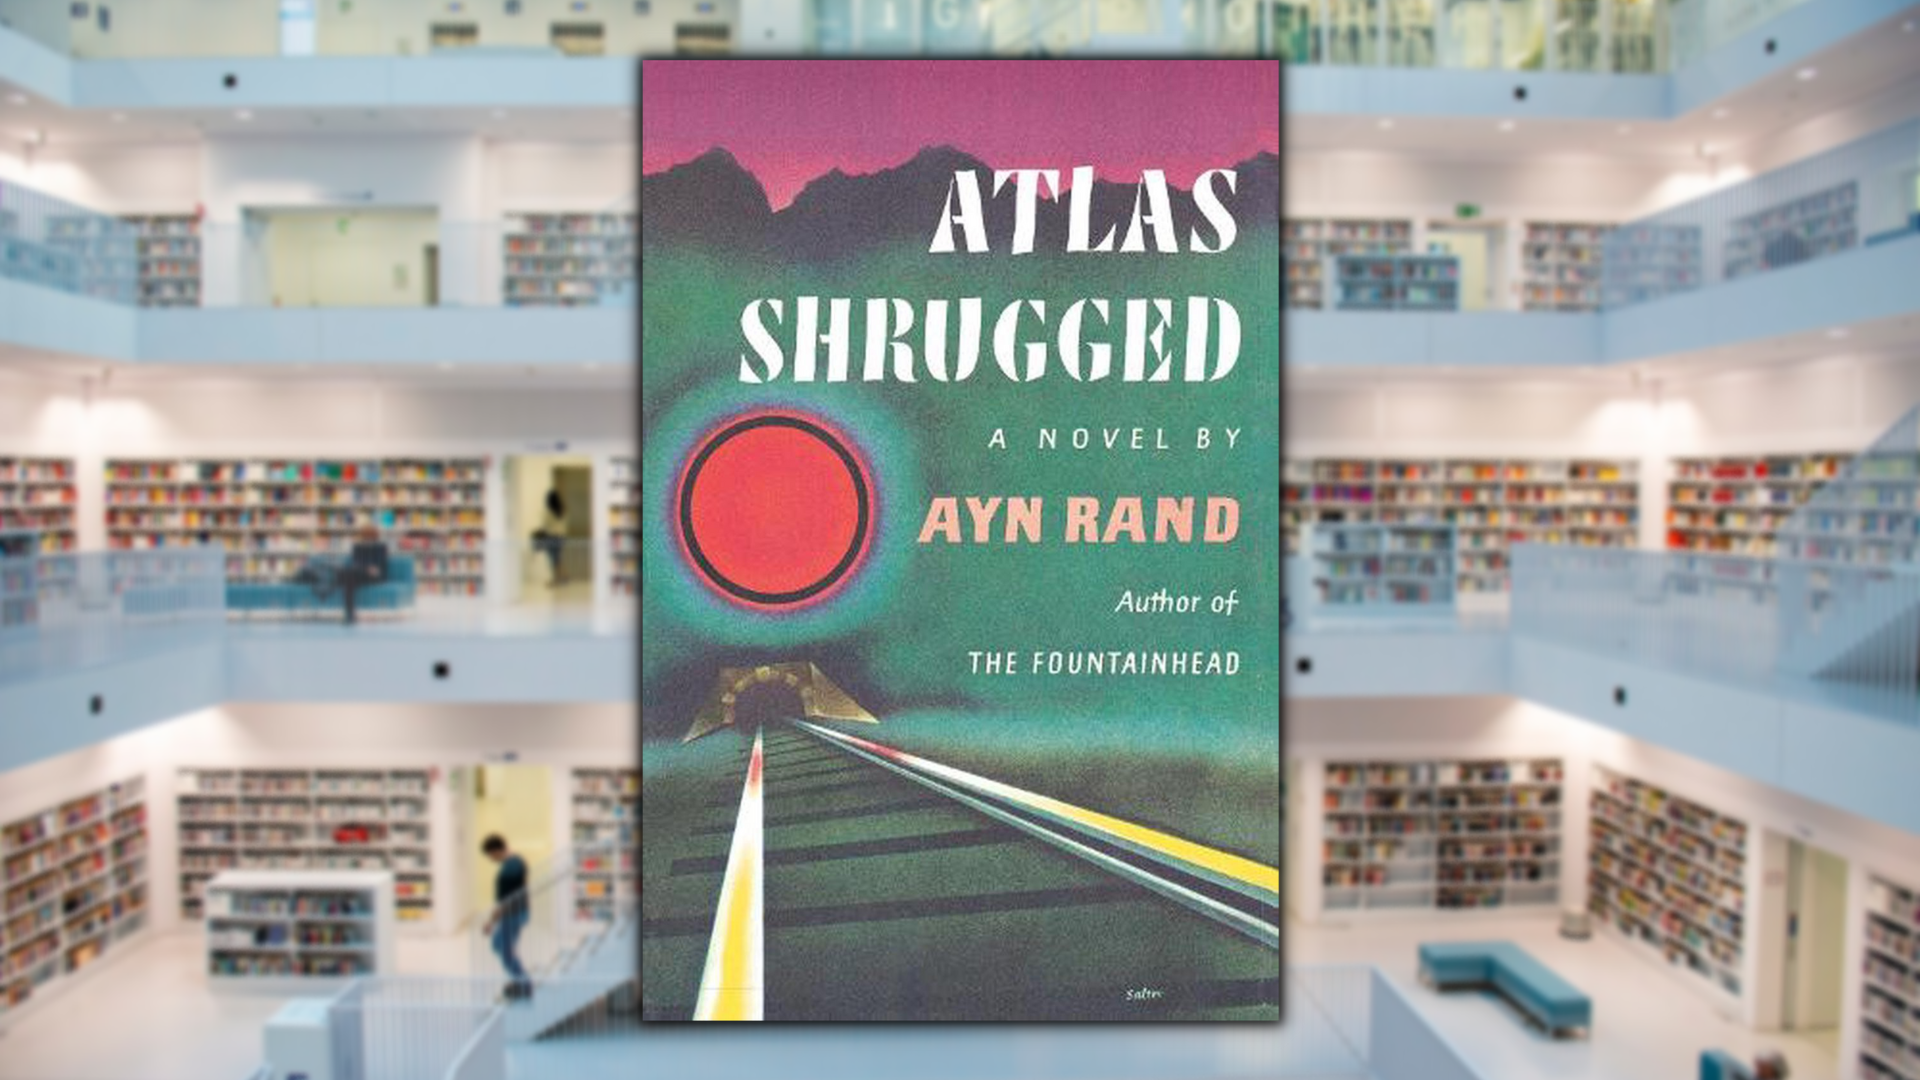 The Fountainhead, by Ayn Rand